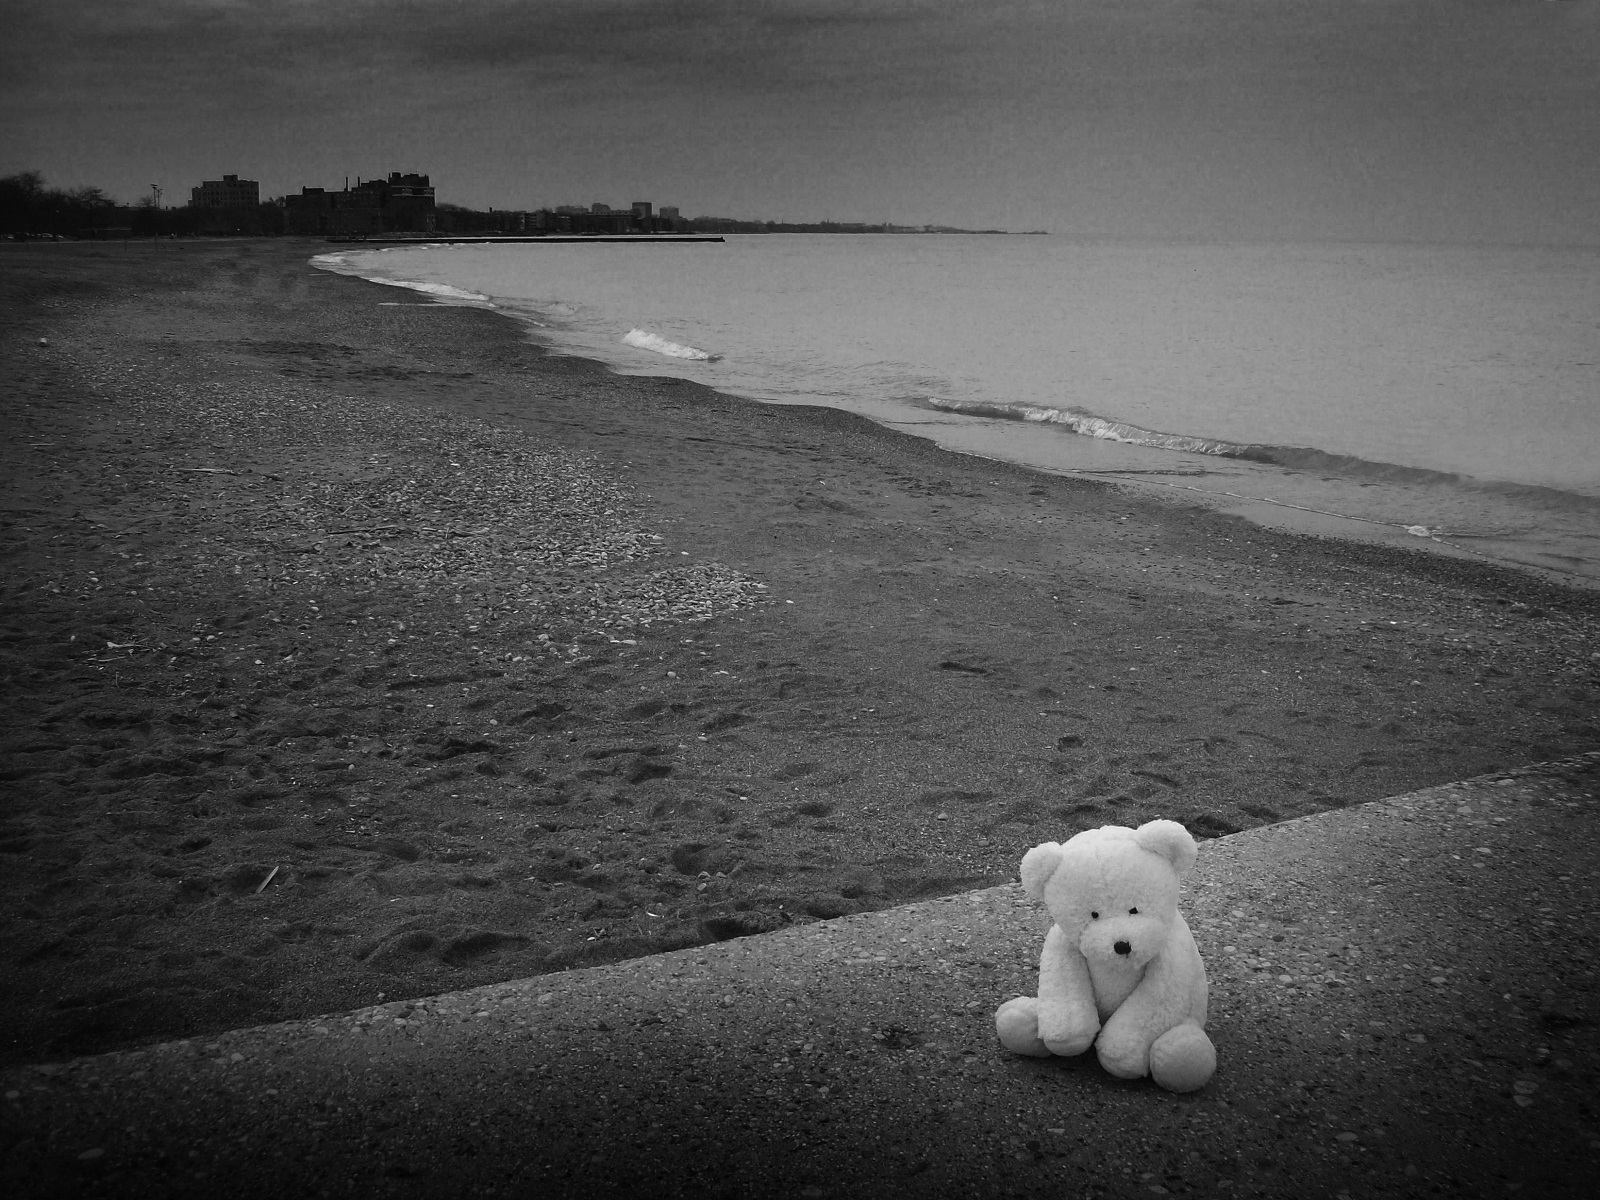 슬픈 곰의 hd 벽지,하얀,검정,하늘,검정색과 흰색,사진